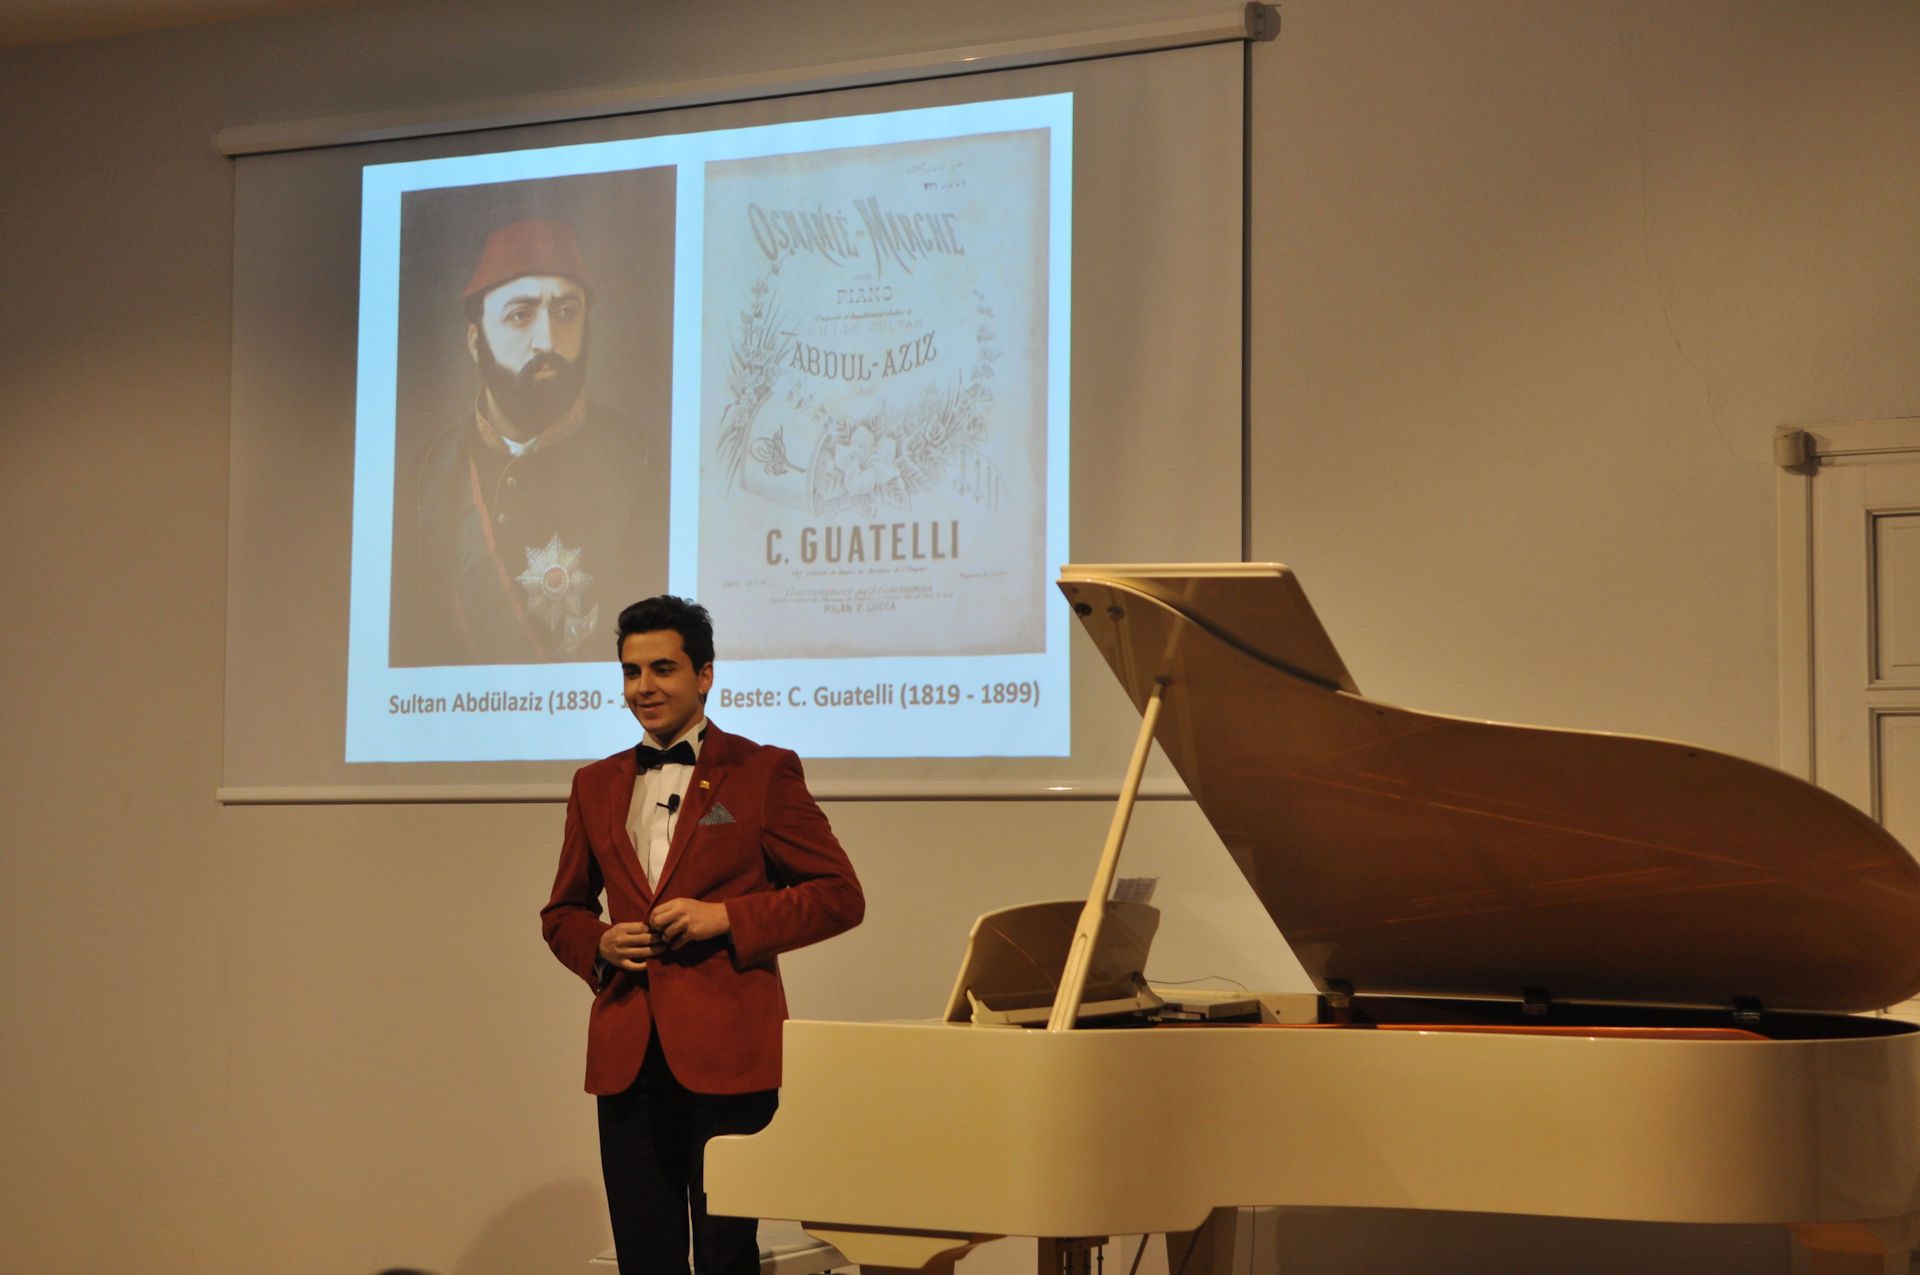 Piyano Tuşlarından Farklı Ezgiler Turing Konserinde Osmanlı Marşlarını Ve Müziklerini çaldı. Genç Osmanlı Piyanist Güneş Yakartepe Konserinde 5 Güzel Eseri Piyano Ile Icra Etti